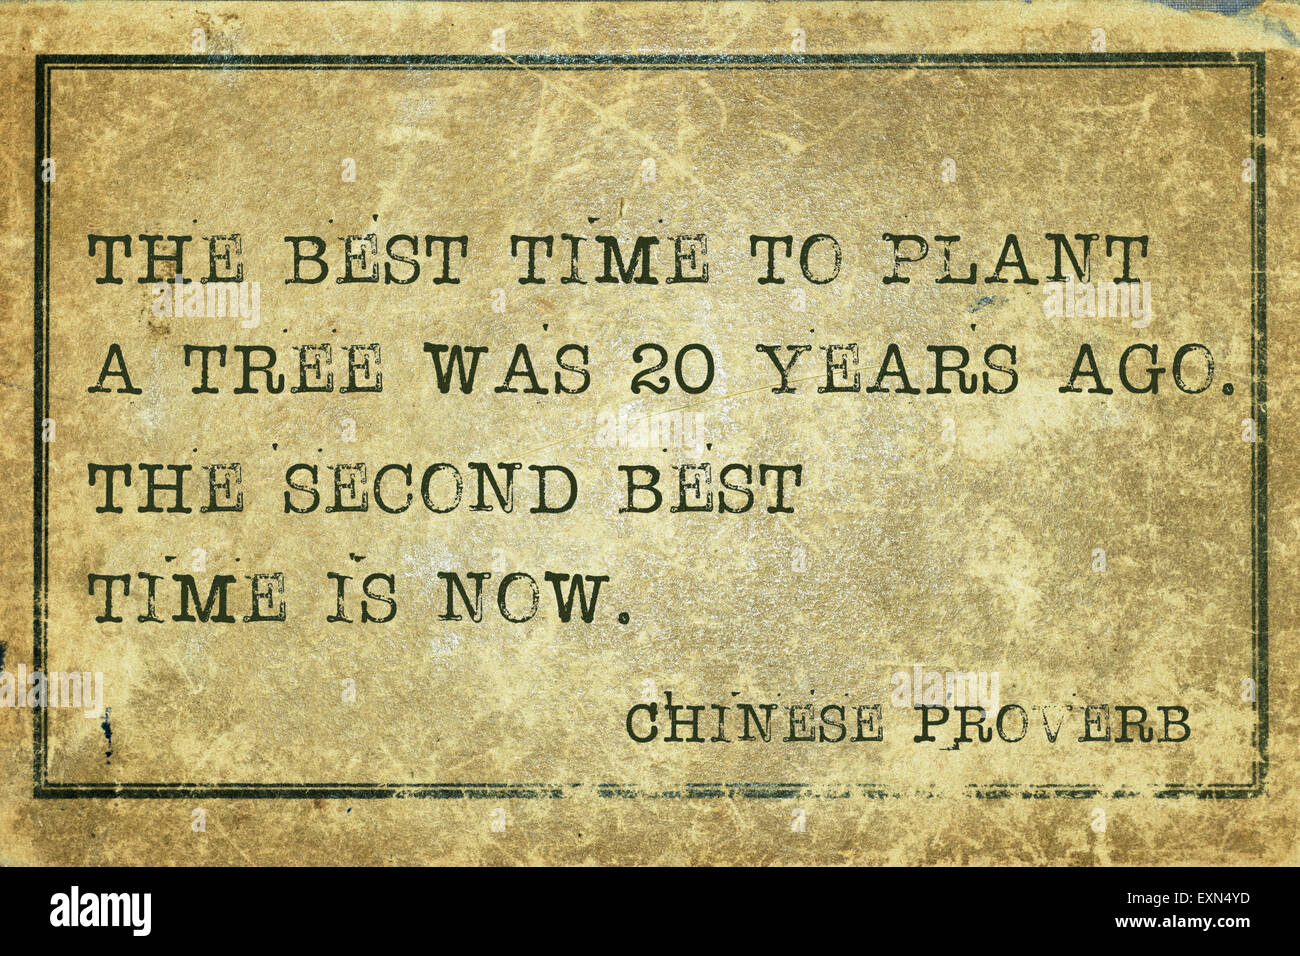 Il momento migliore per piantare un albero era venti anni fa - antico proverbio cinese stampato su grunge cartone vintage Foto Stock